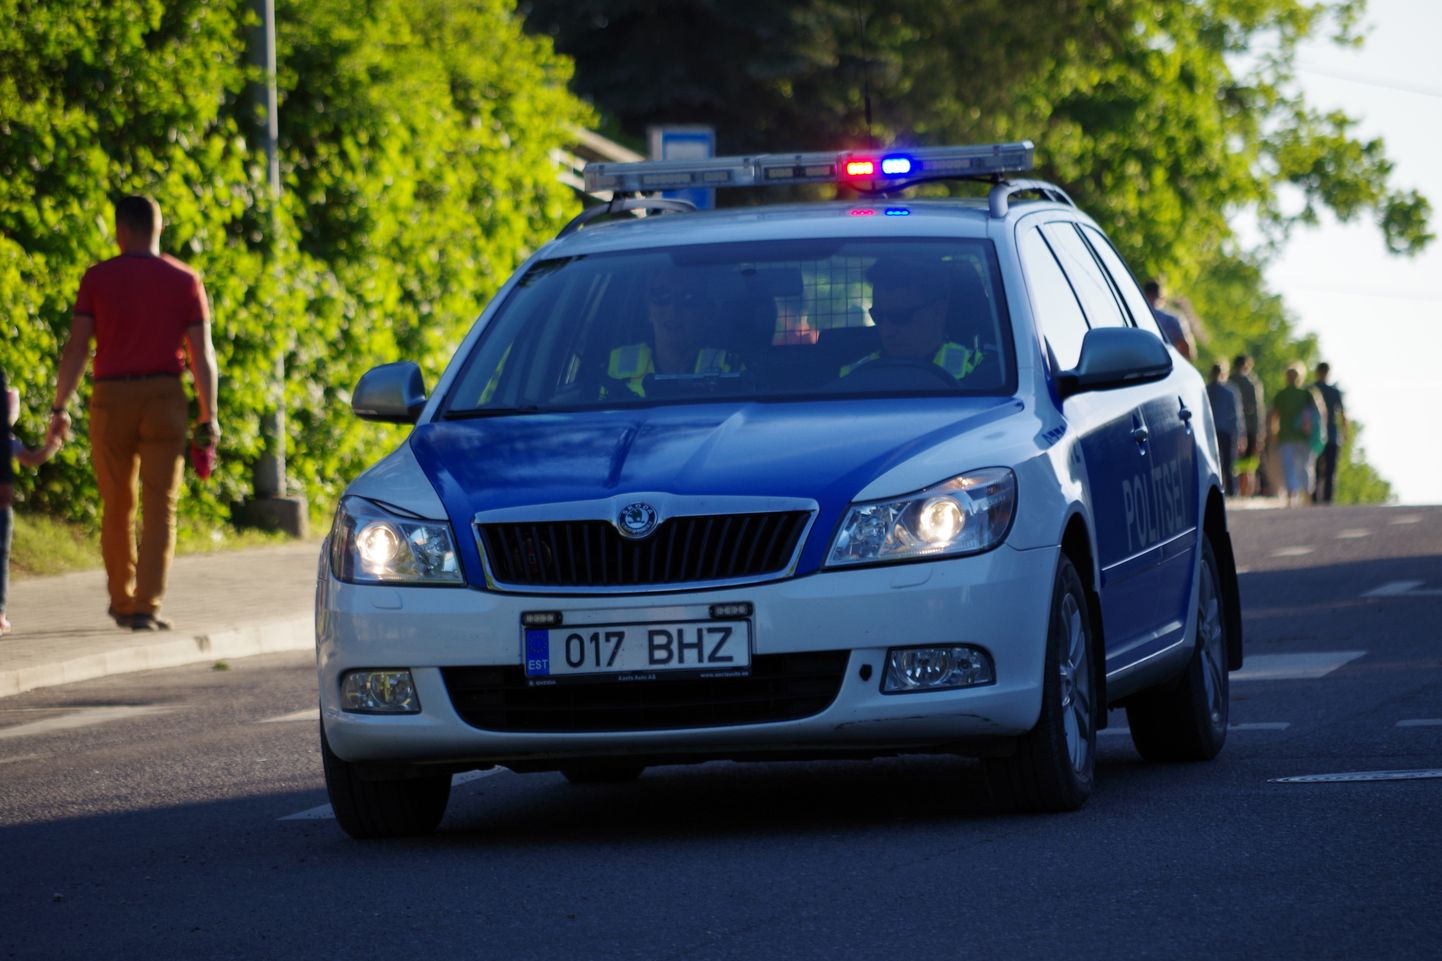 Politsei ülesanne on hoolimatu suhtumisega ja ohtliku olemusega juhid liiklusest kõrvaldada.